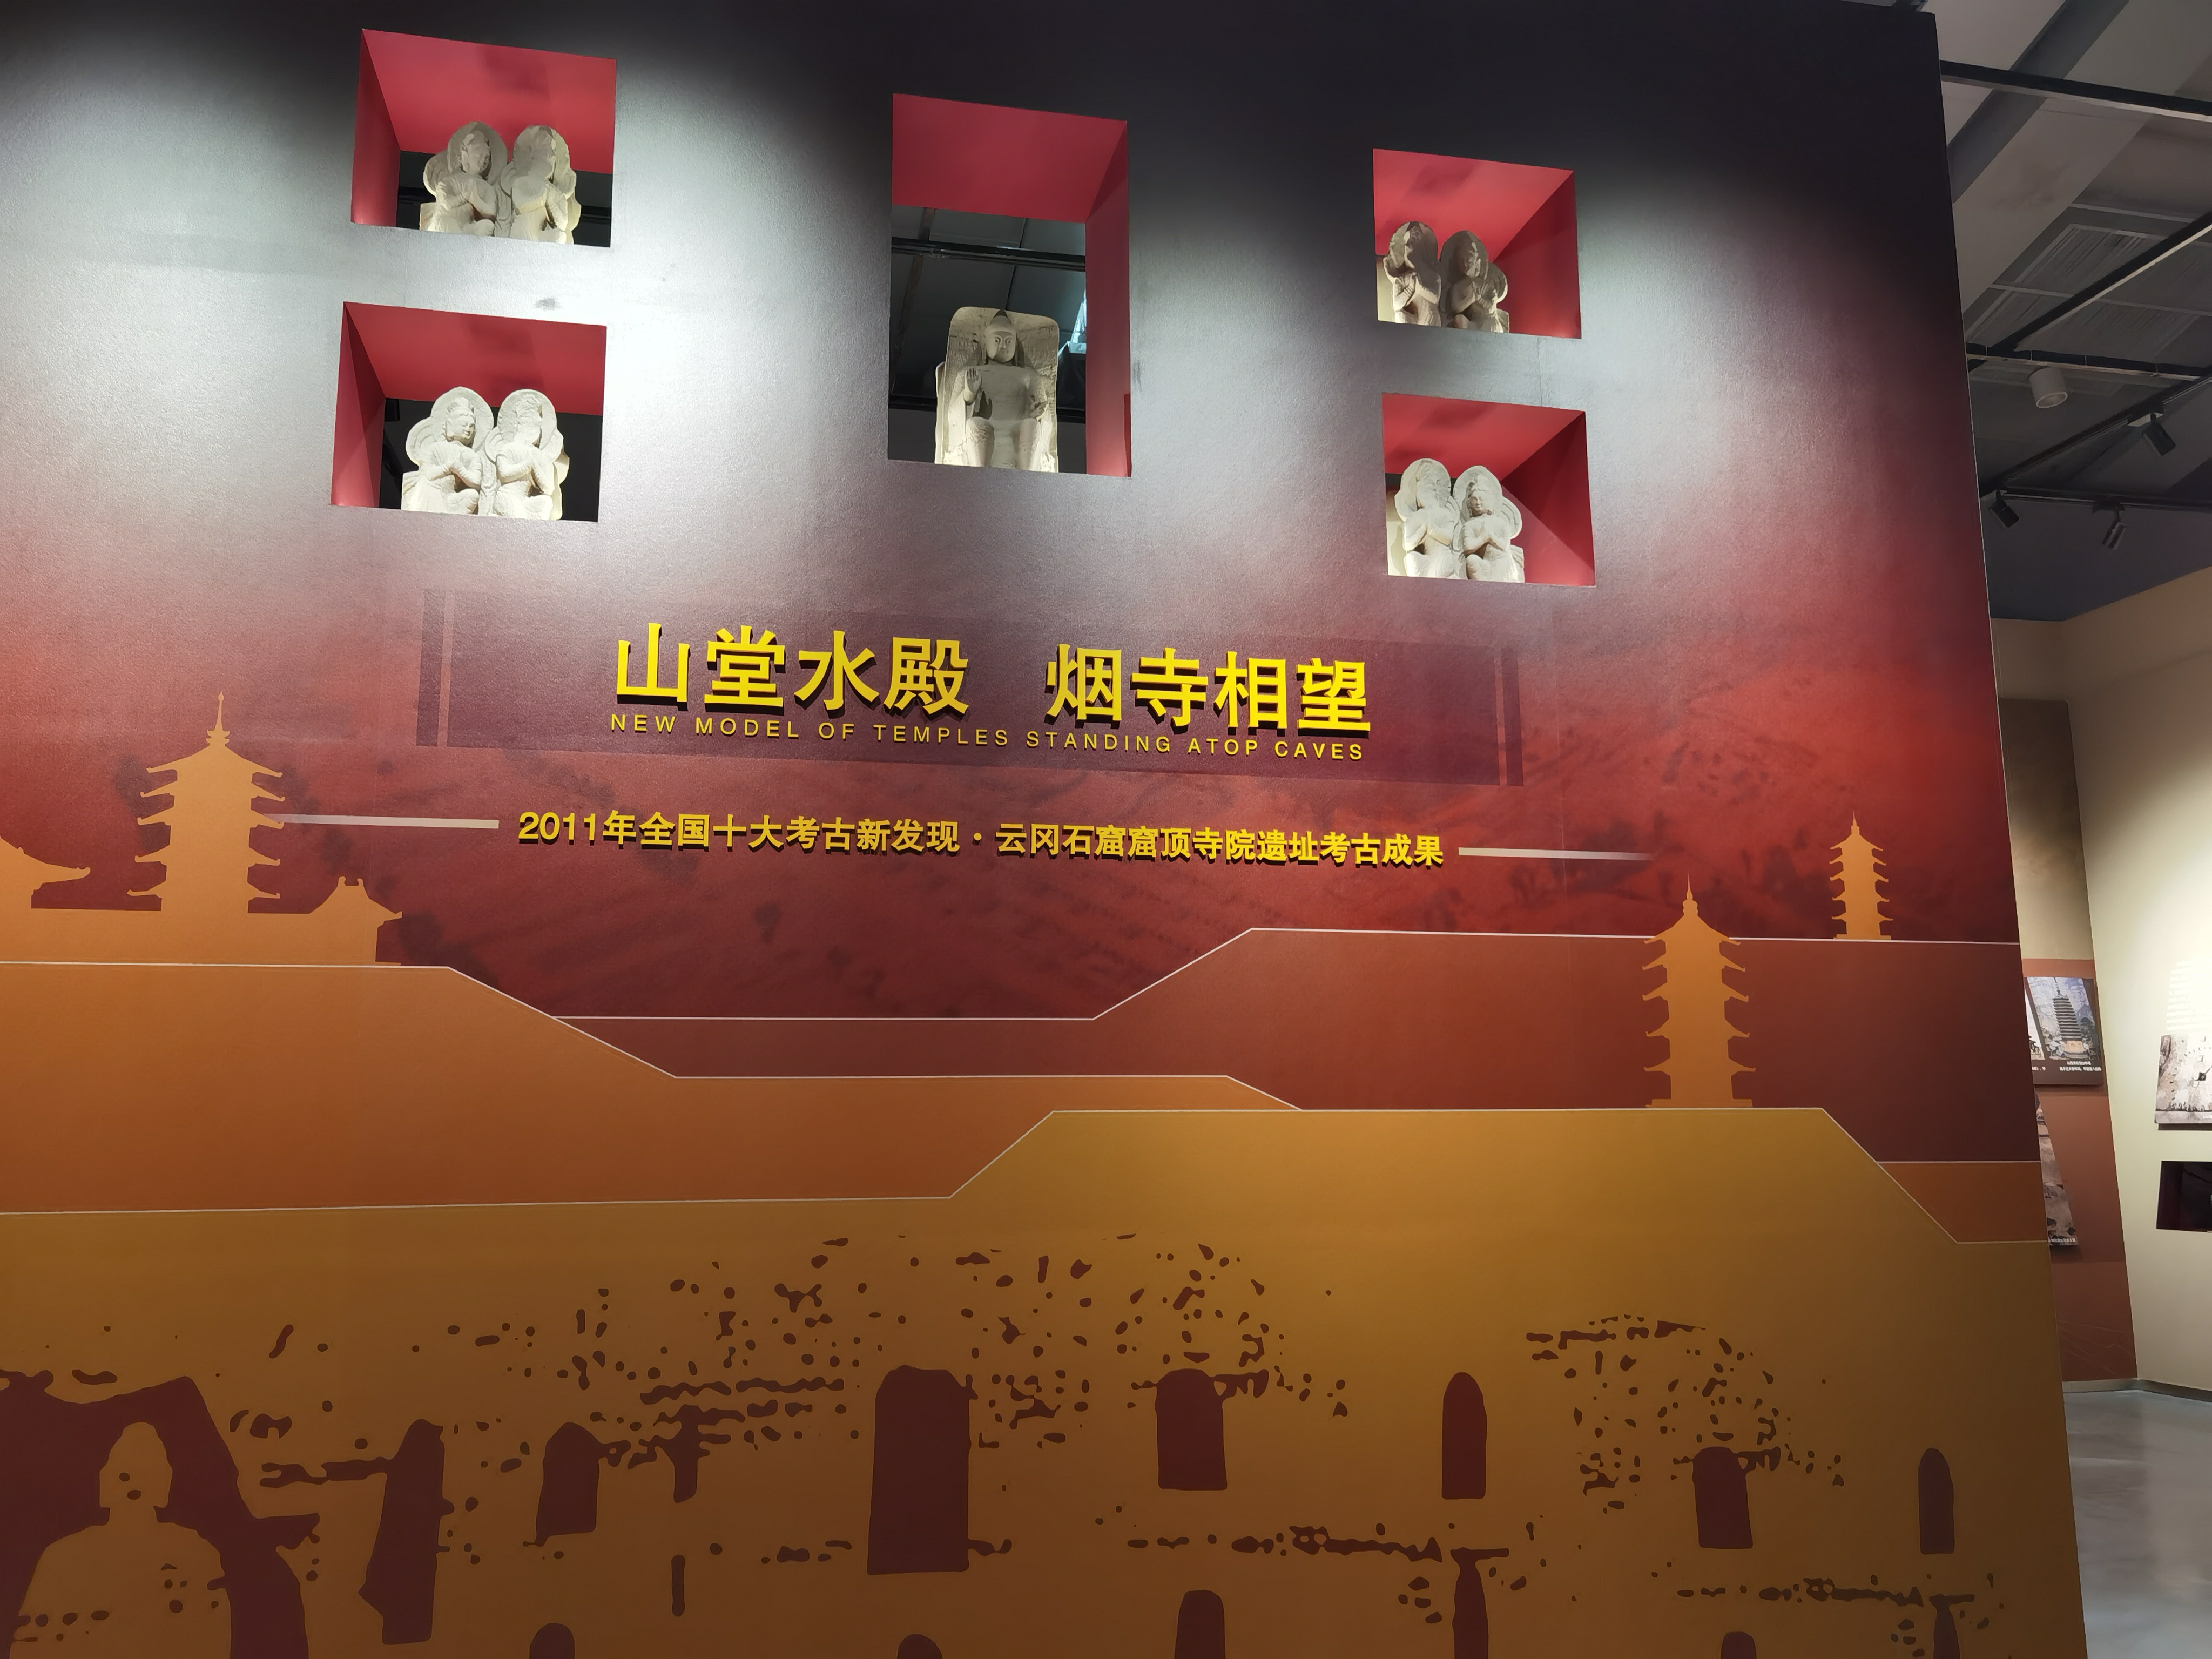 云冈研究院将推出“中国与世界”系列展览